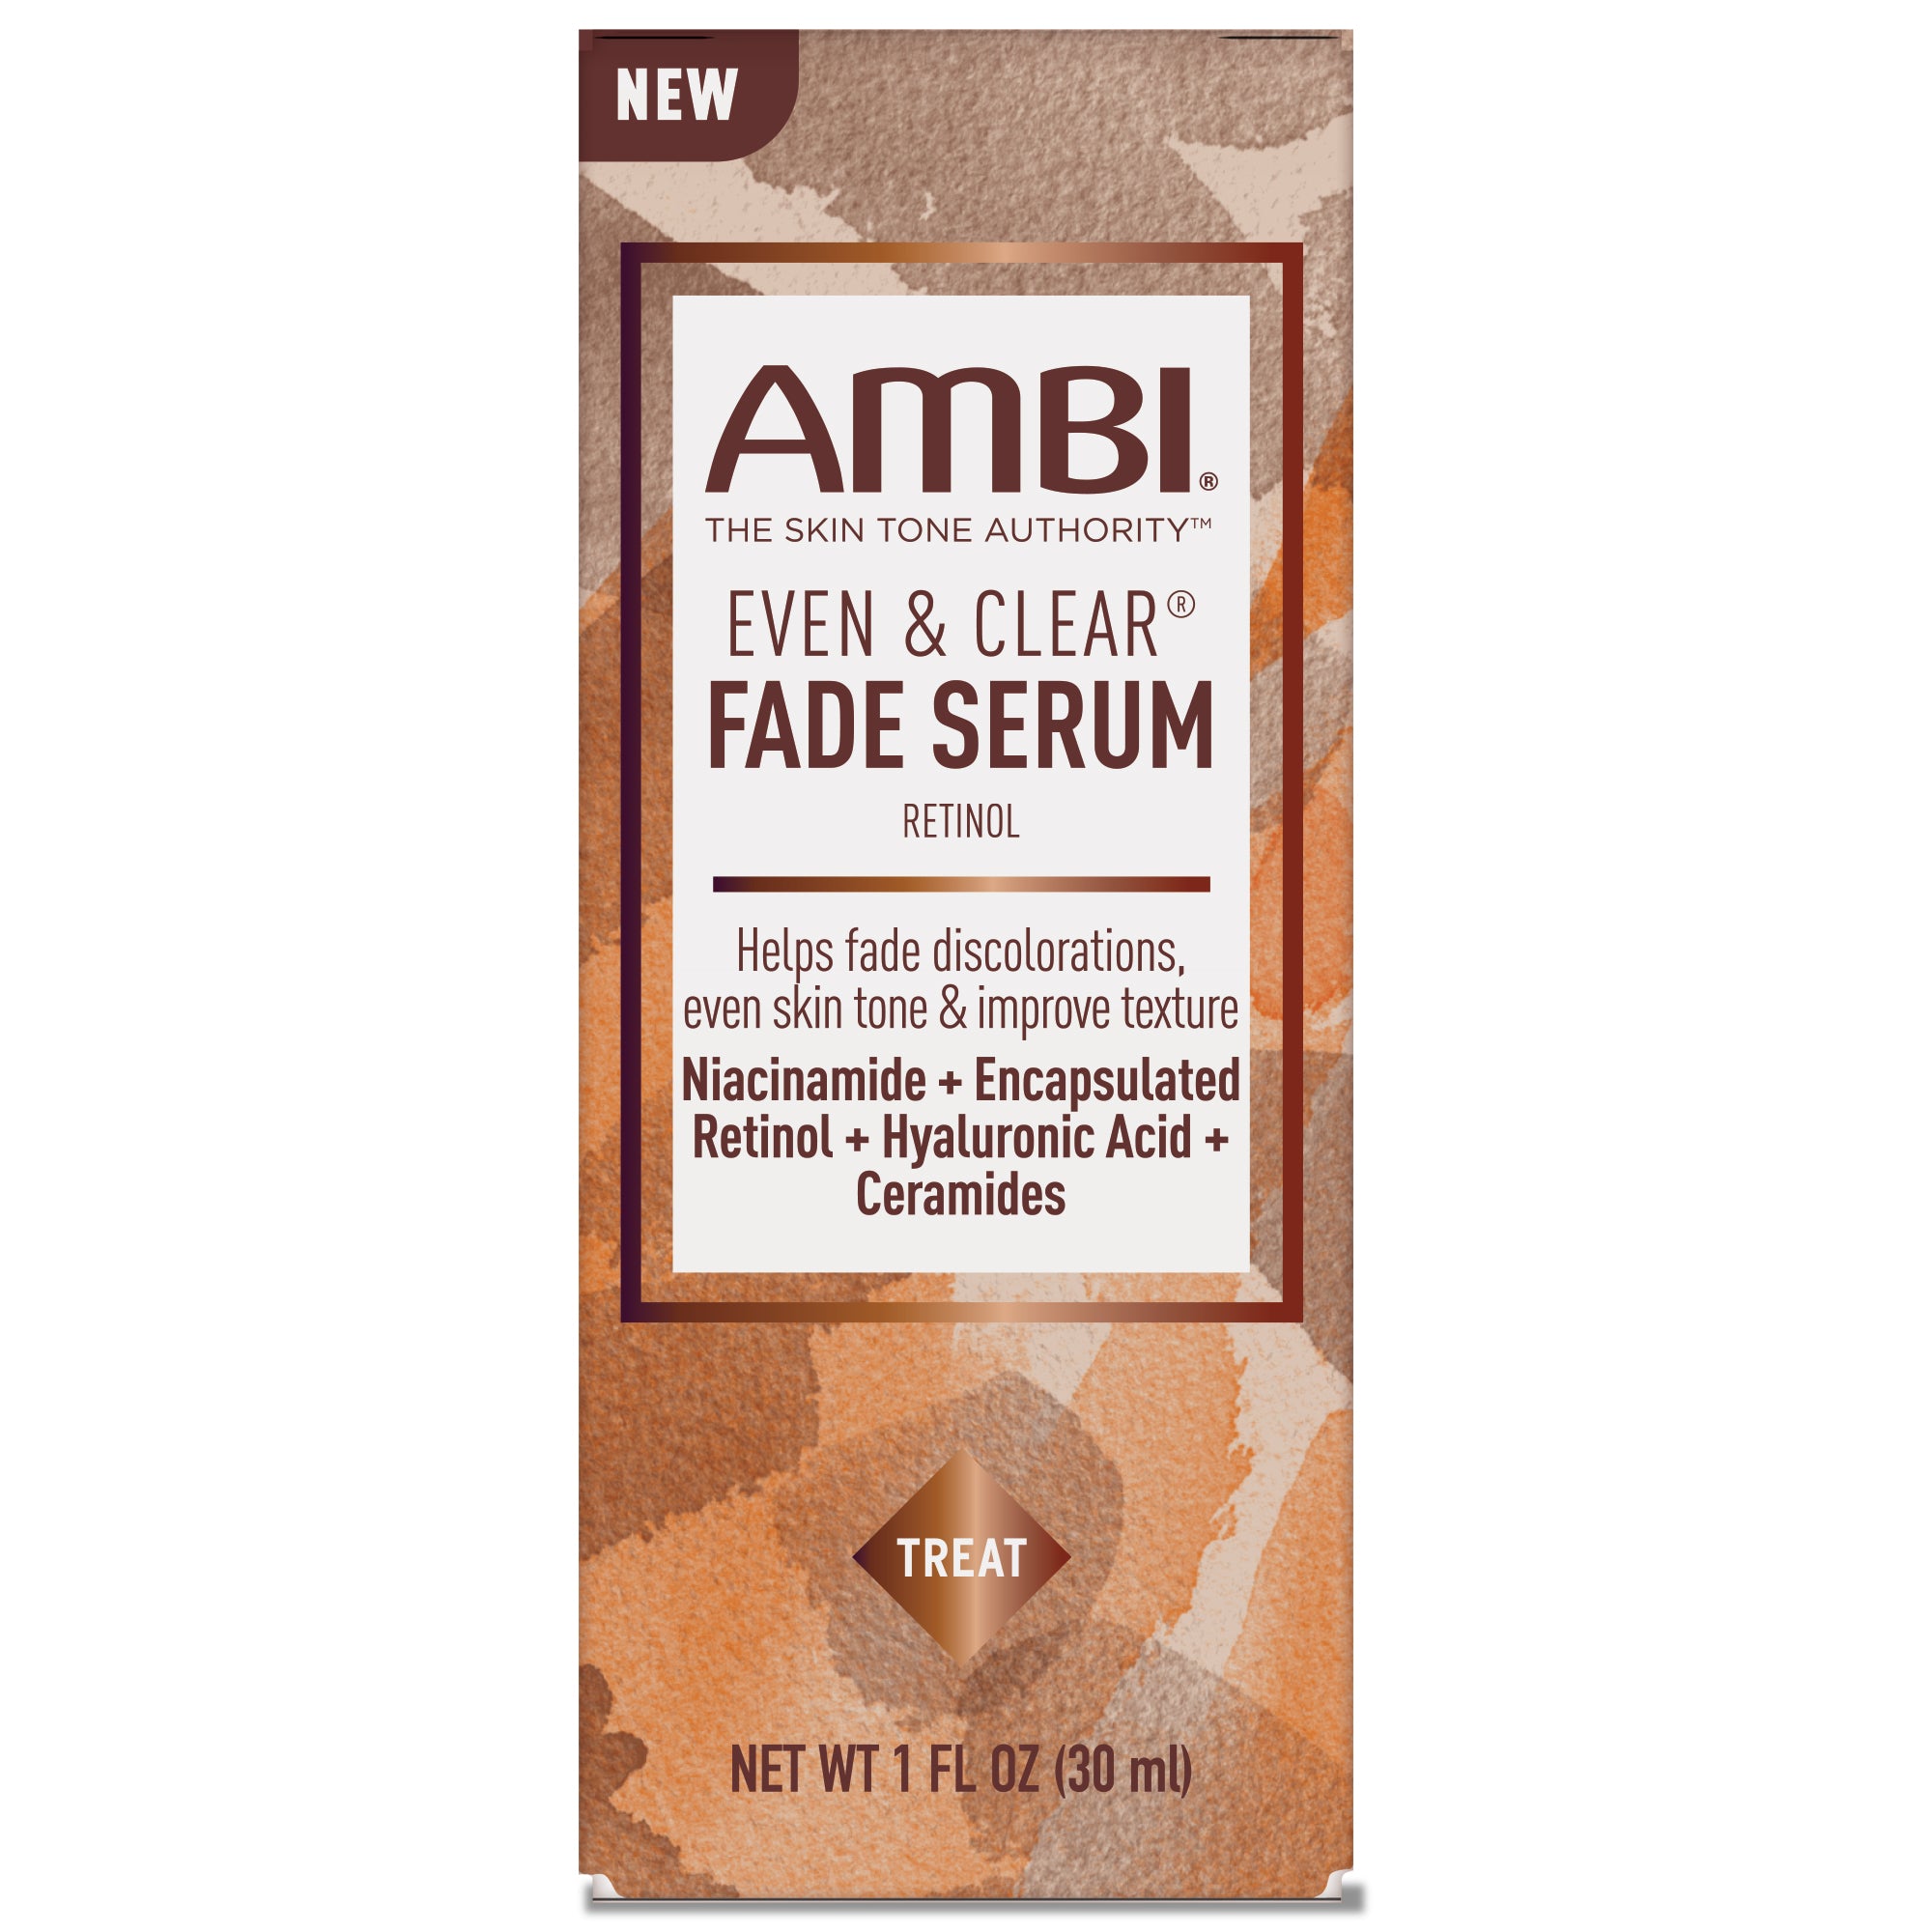 NEW! AMBI Fade Serum Retinol Hydroquinone-Free